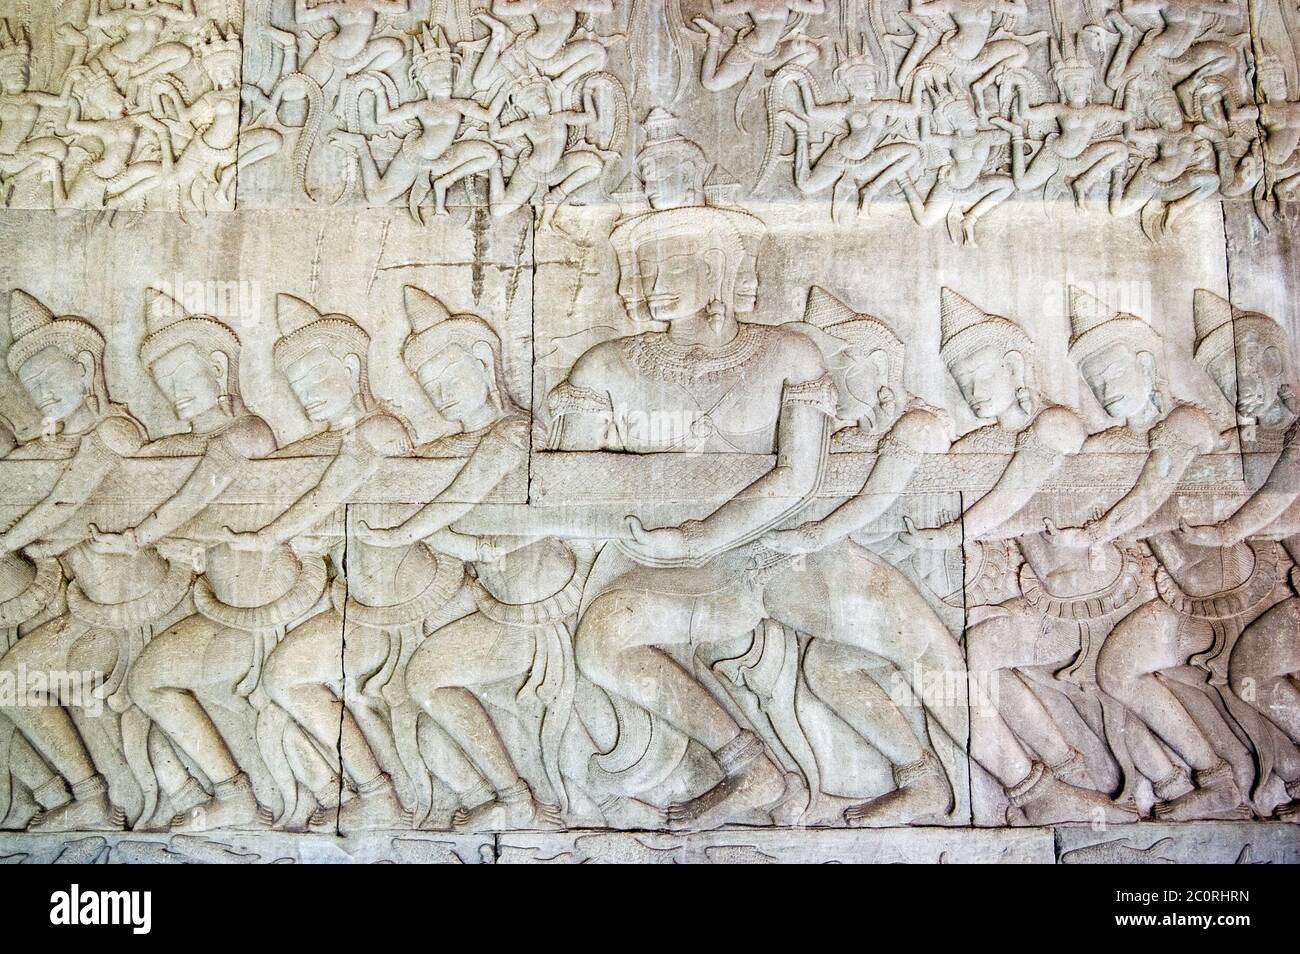 Antica scultura in bassorilievo Khmer che mostra una fila di divinità indù, devas, tirando sul serpente Vasuki. Leggenda della zaffa dell'oceano del latte, Angkor Foto Stock